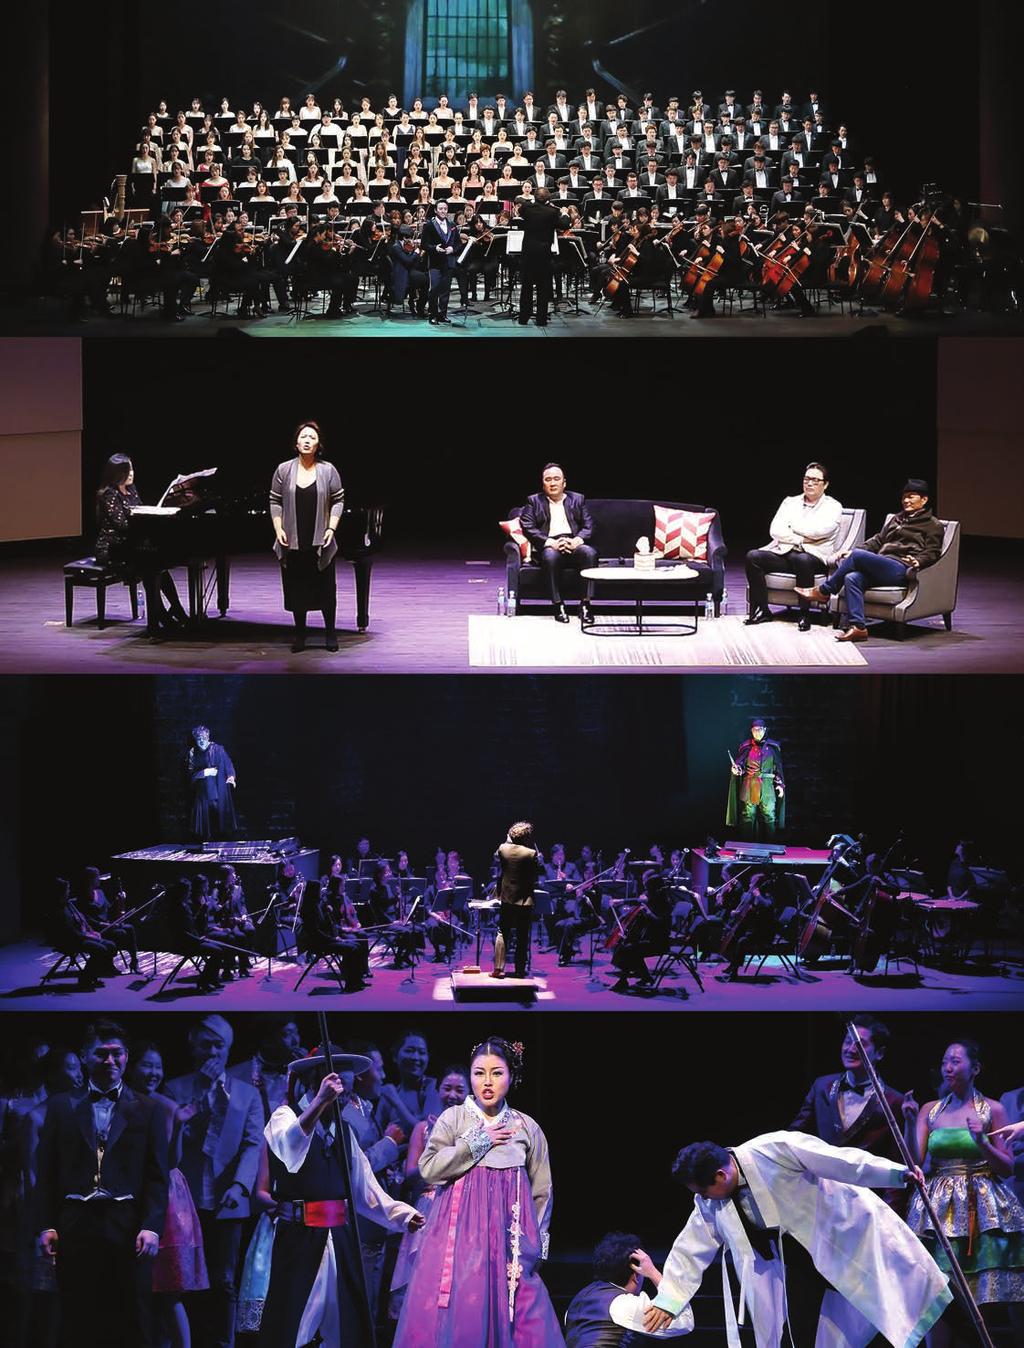 Opera Open Concert Best Scenes of Best Operas